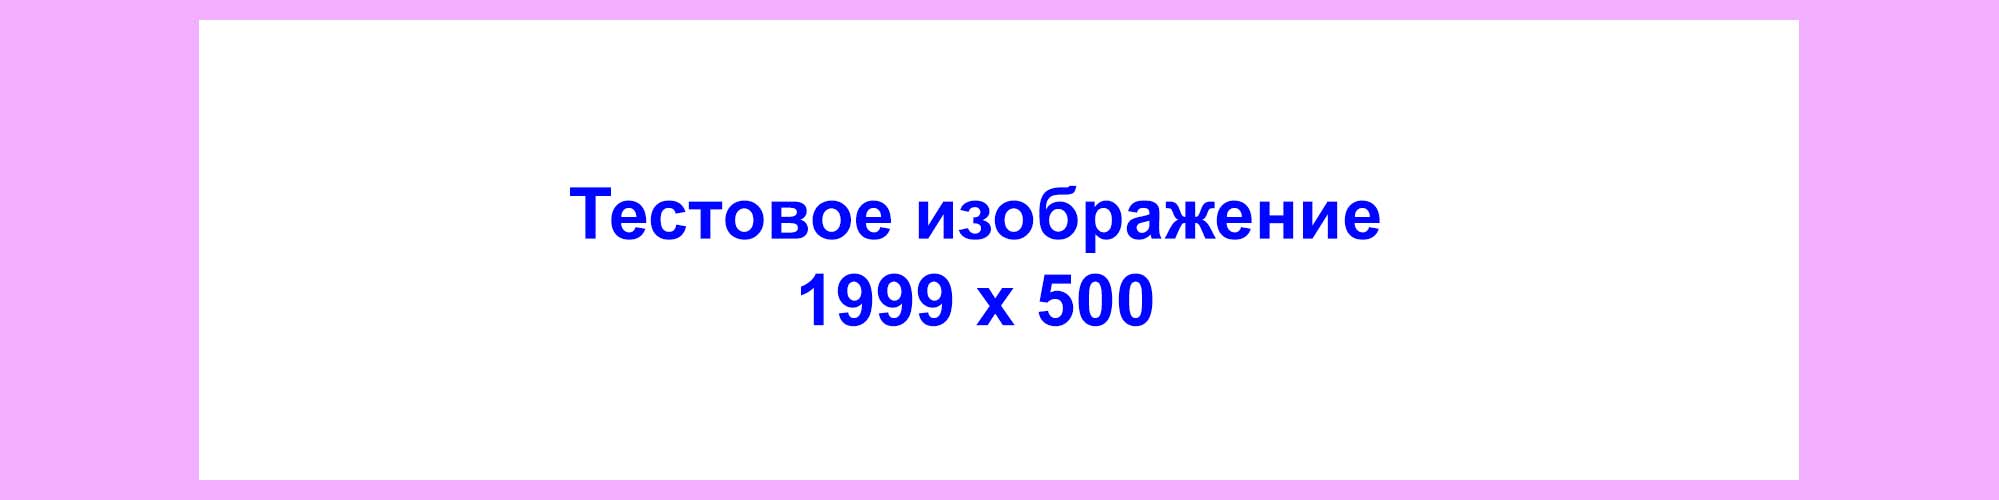 Тестовое изображение 500.jpg